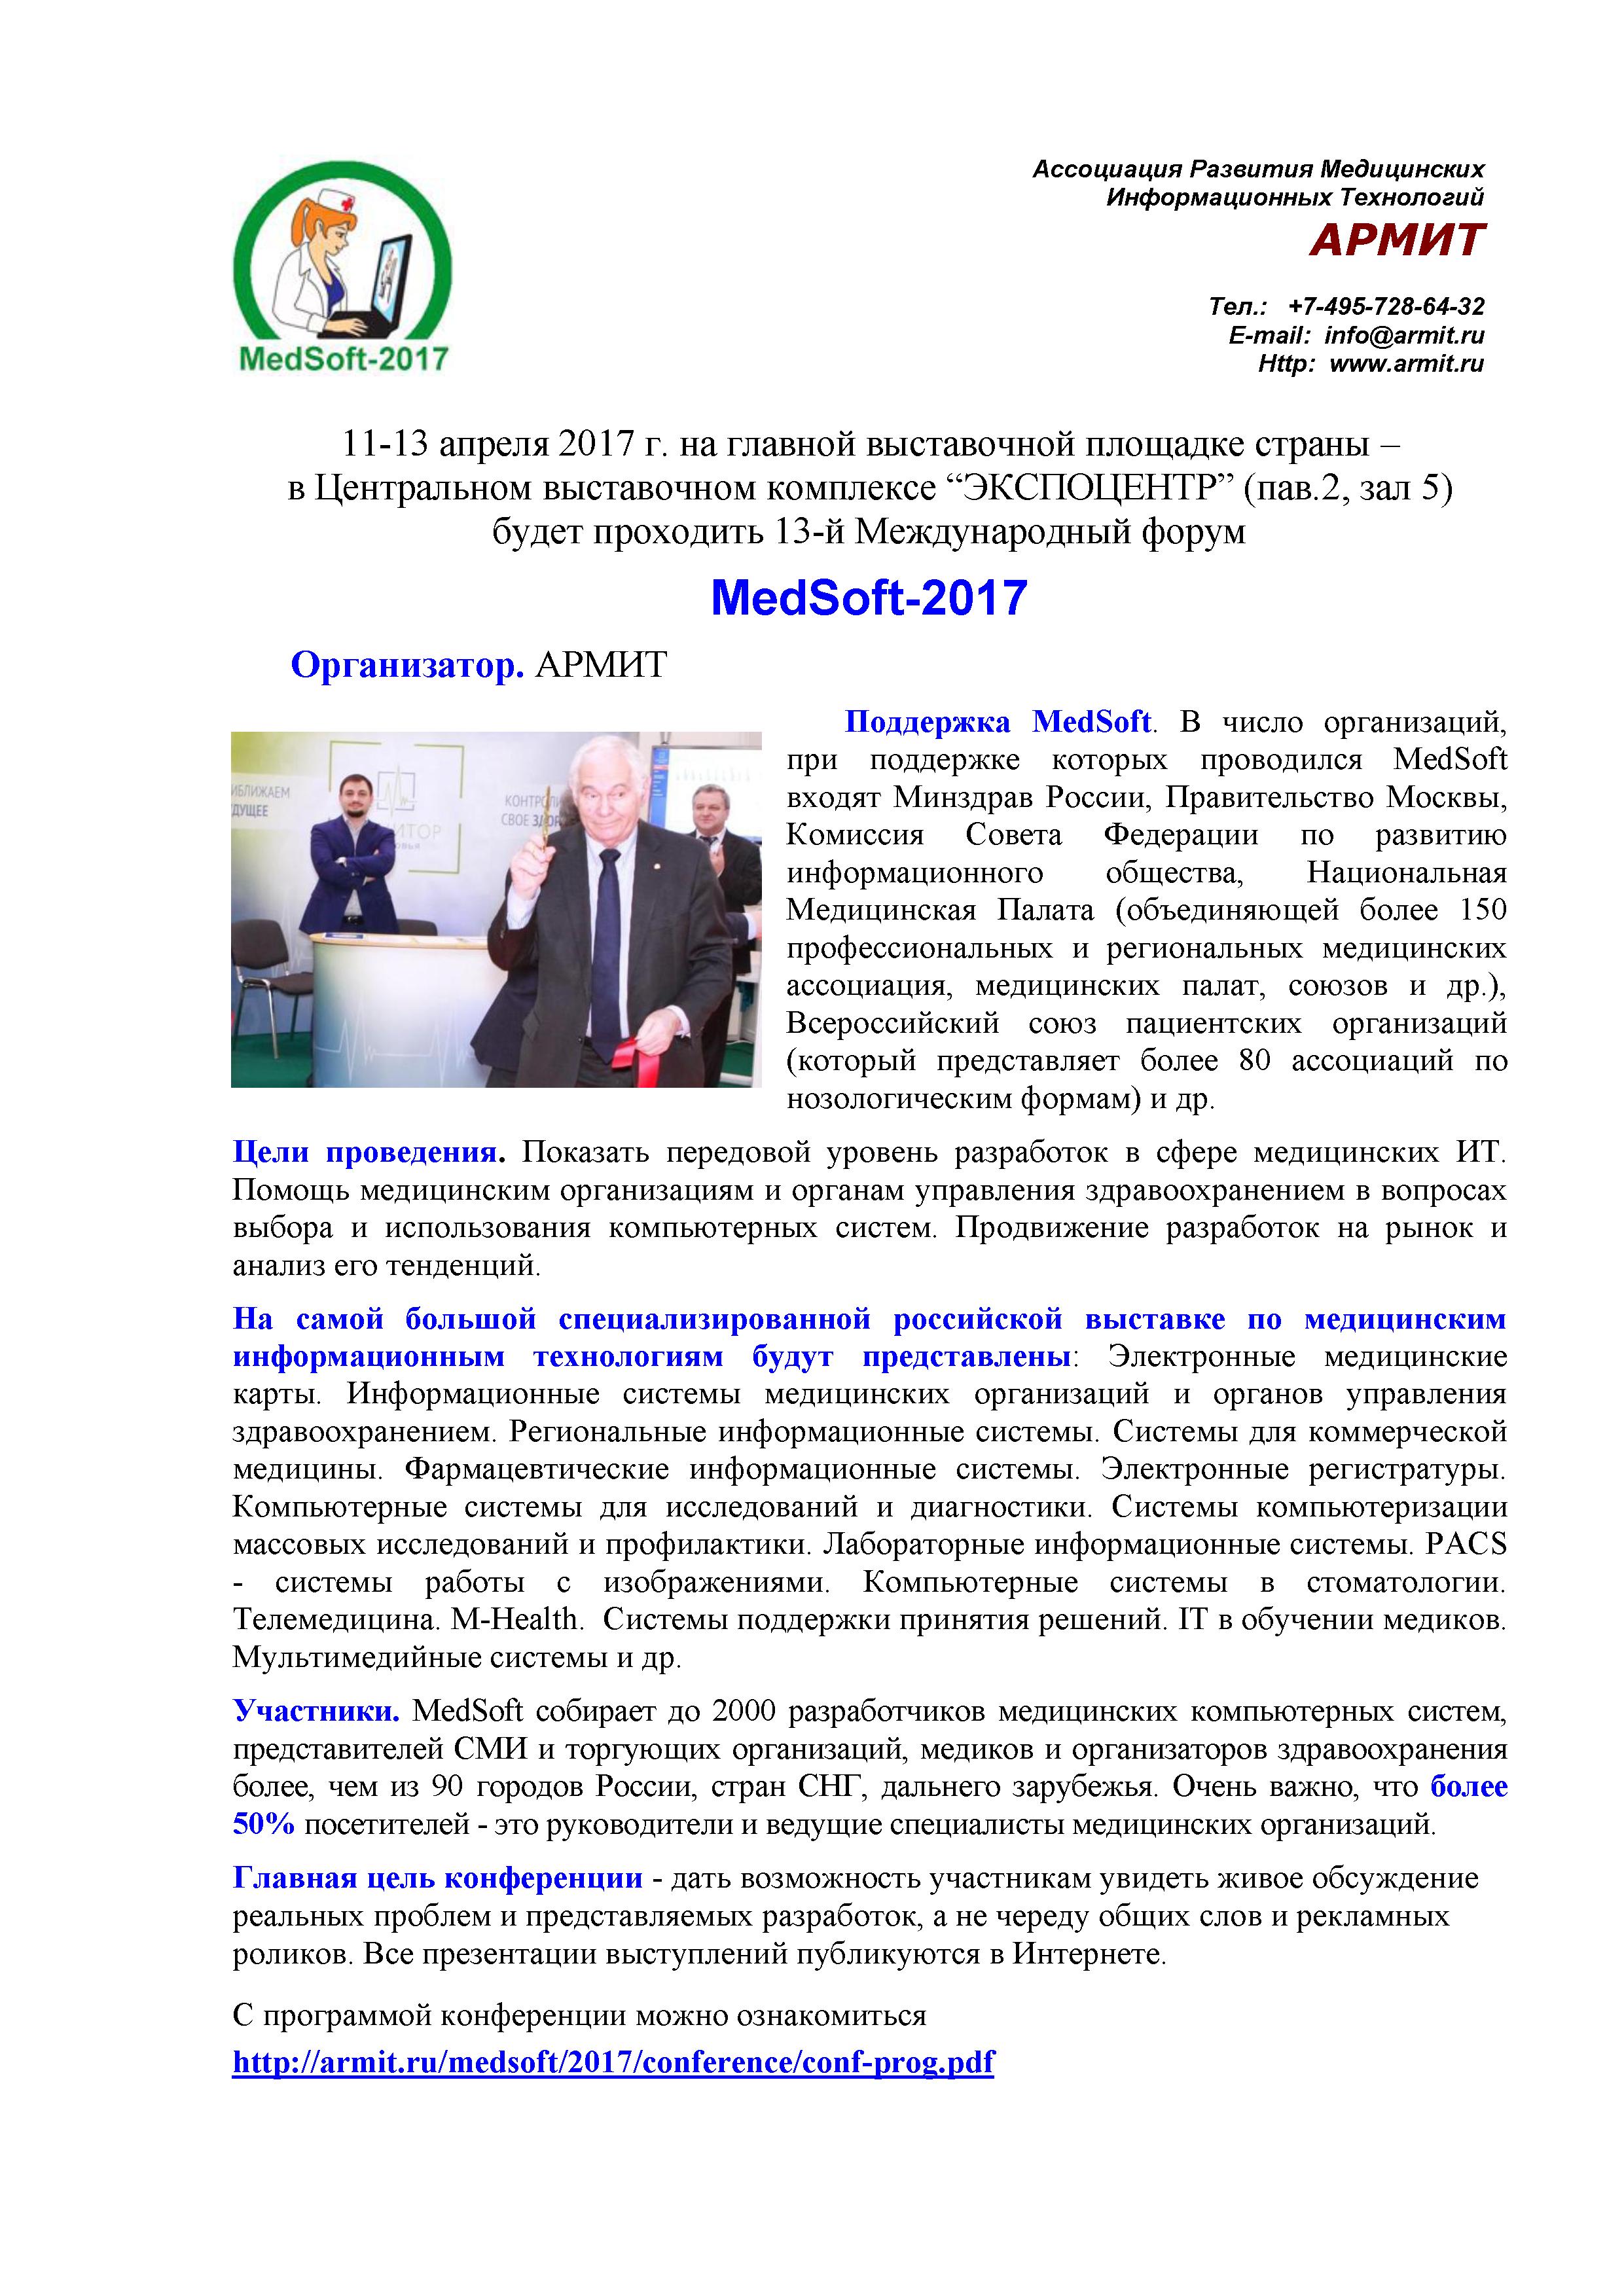 В Москве, с 11 по 13 апреля 2017 г. в Центральном выставочном комплексе “ЭКСПОЦЕНТР” (пав.2, зал 5) будет проходить 13-й Международный форум MedSoft-2017 [2]